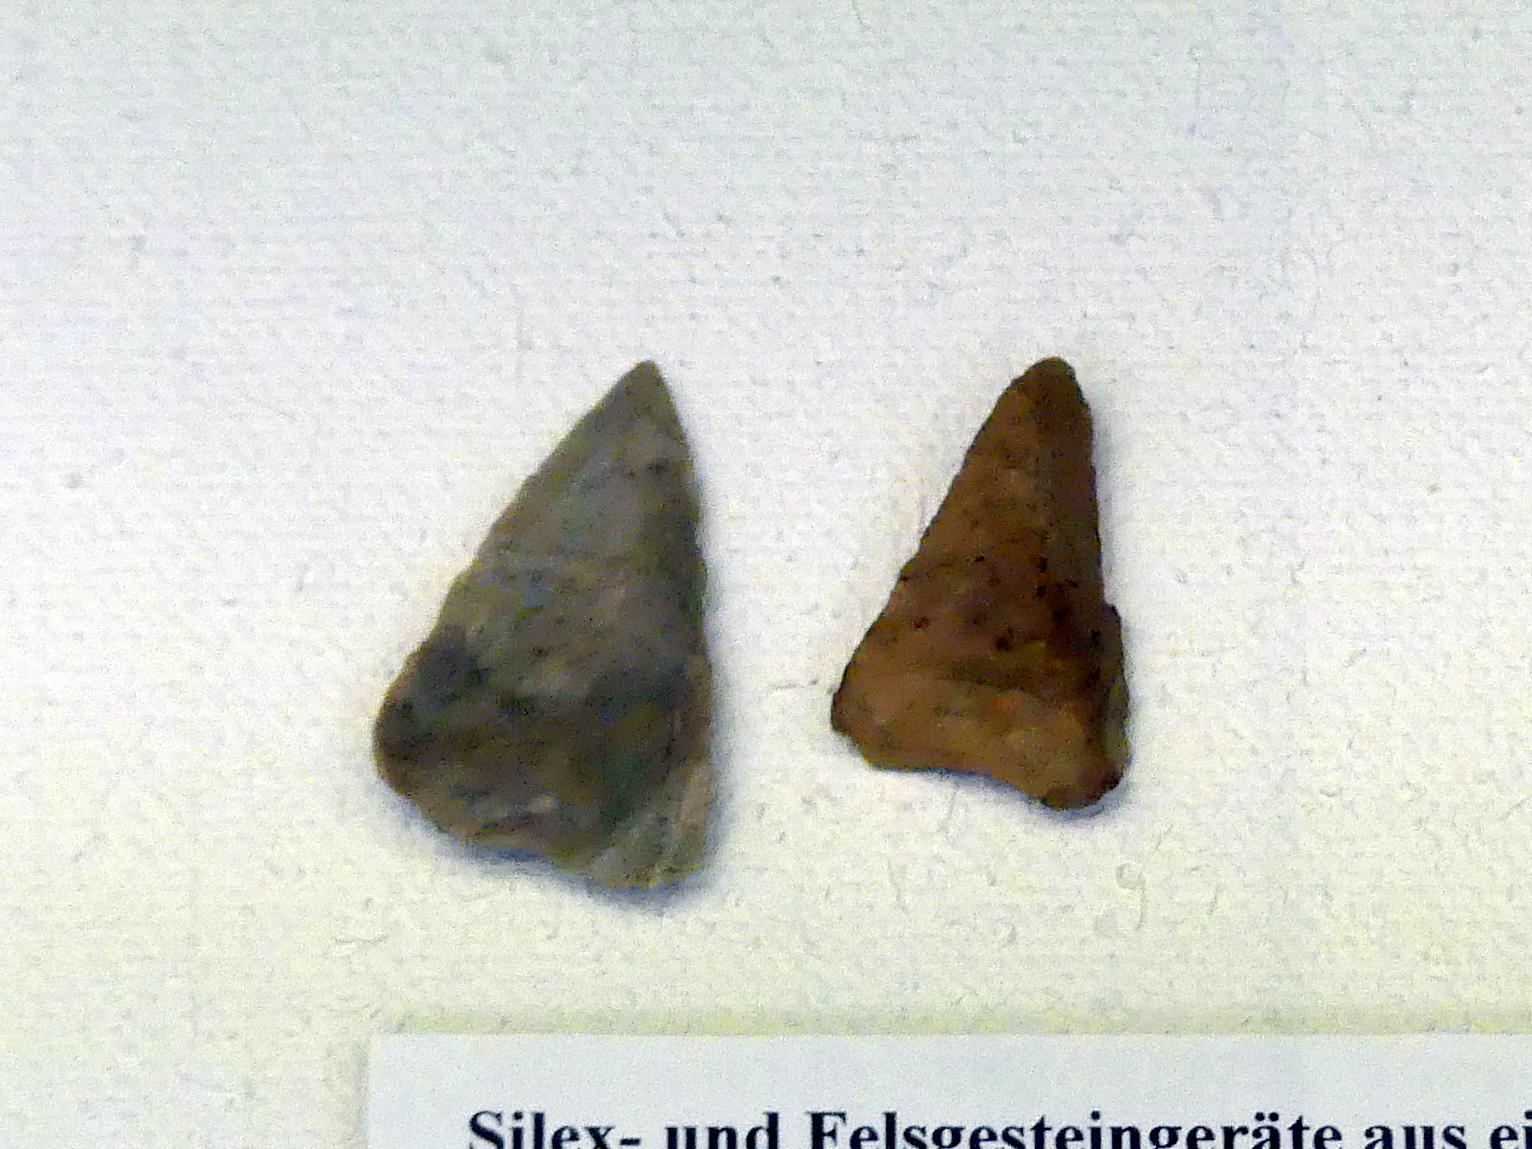 2 Pfeilspitzen, Frühneolithikum (Altneolithikum), 5500 - 4900 v. Chr., Mittelneolithikum, 5500 - 4400 v. Chr.